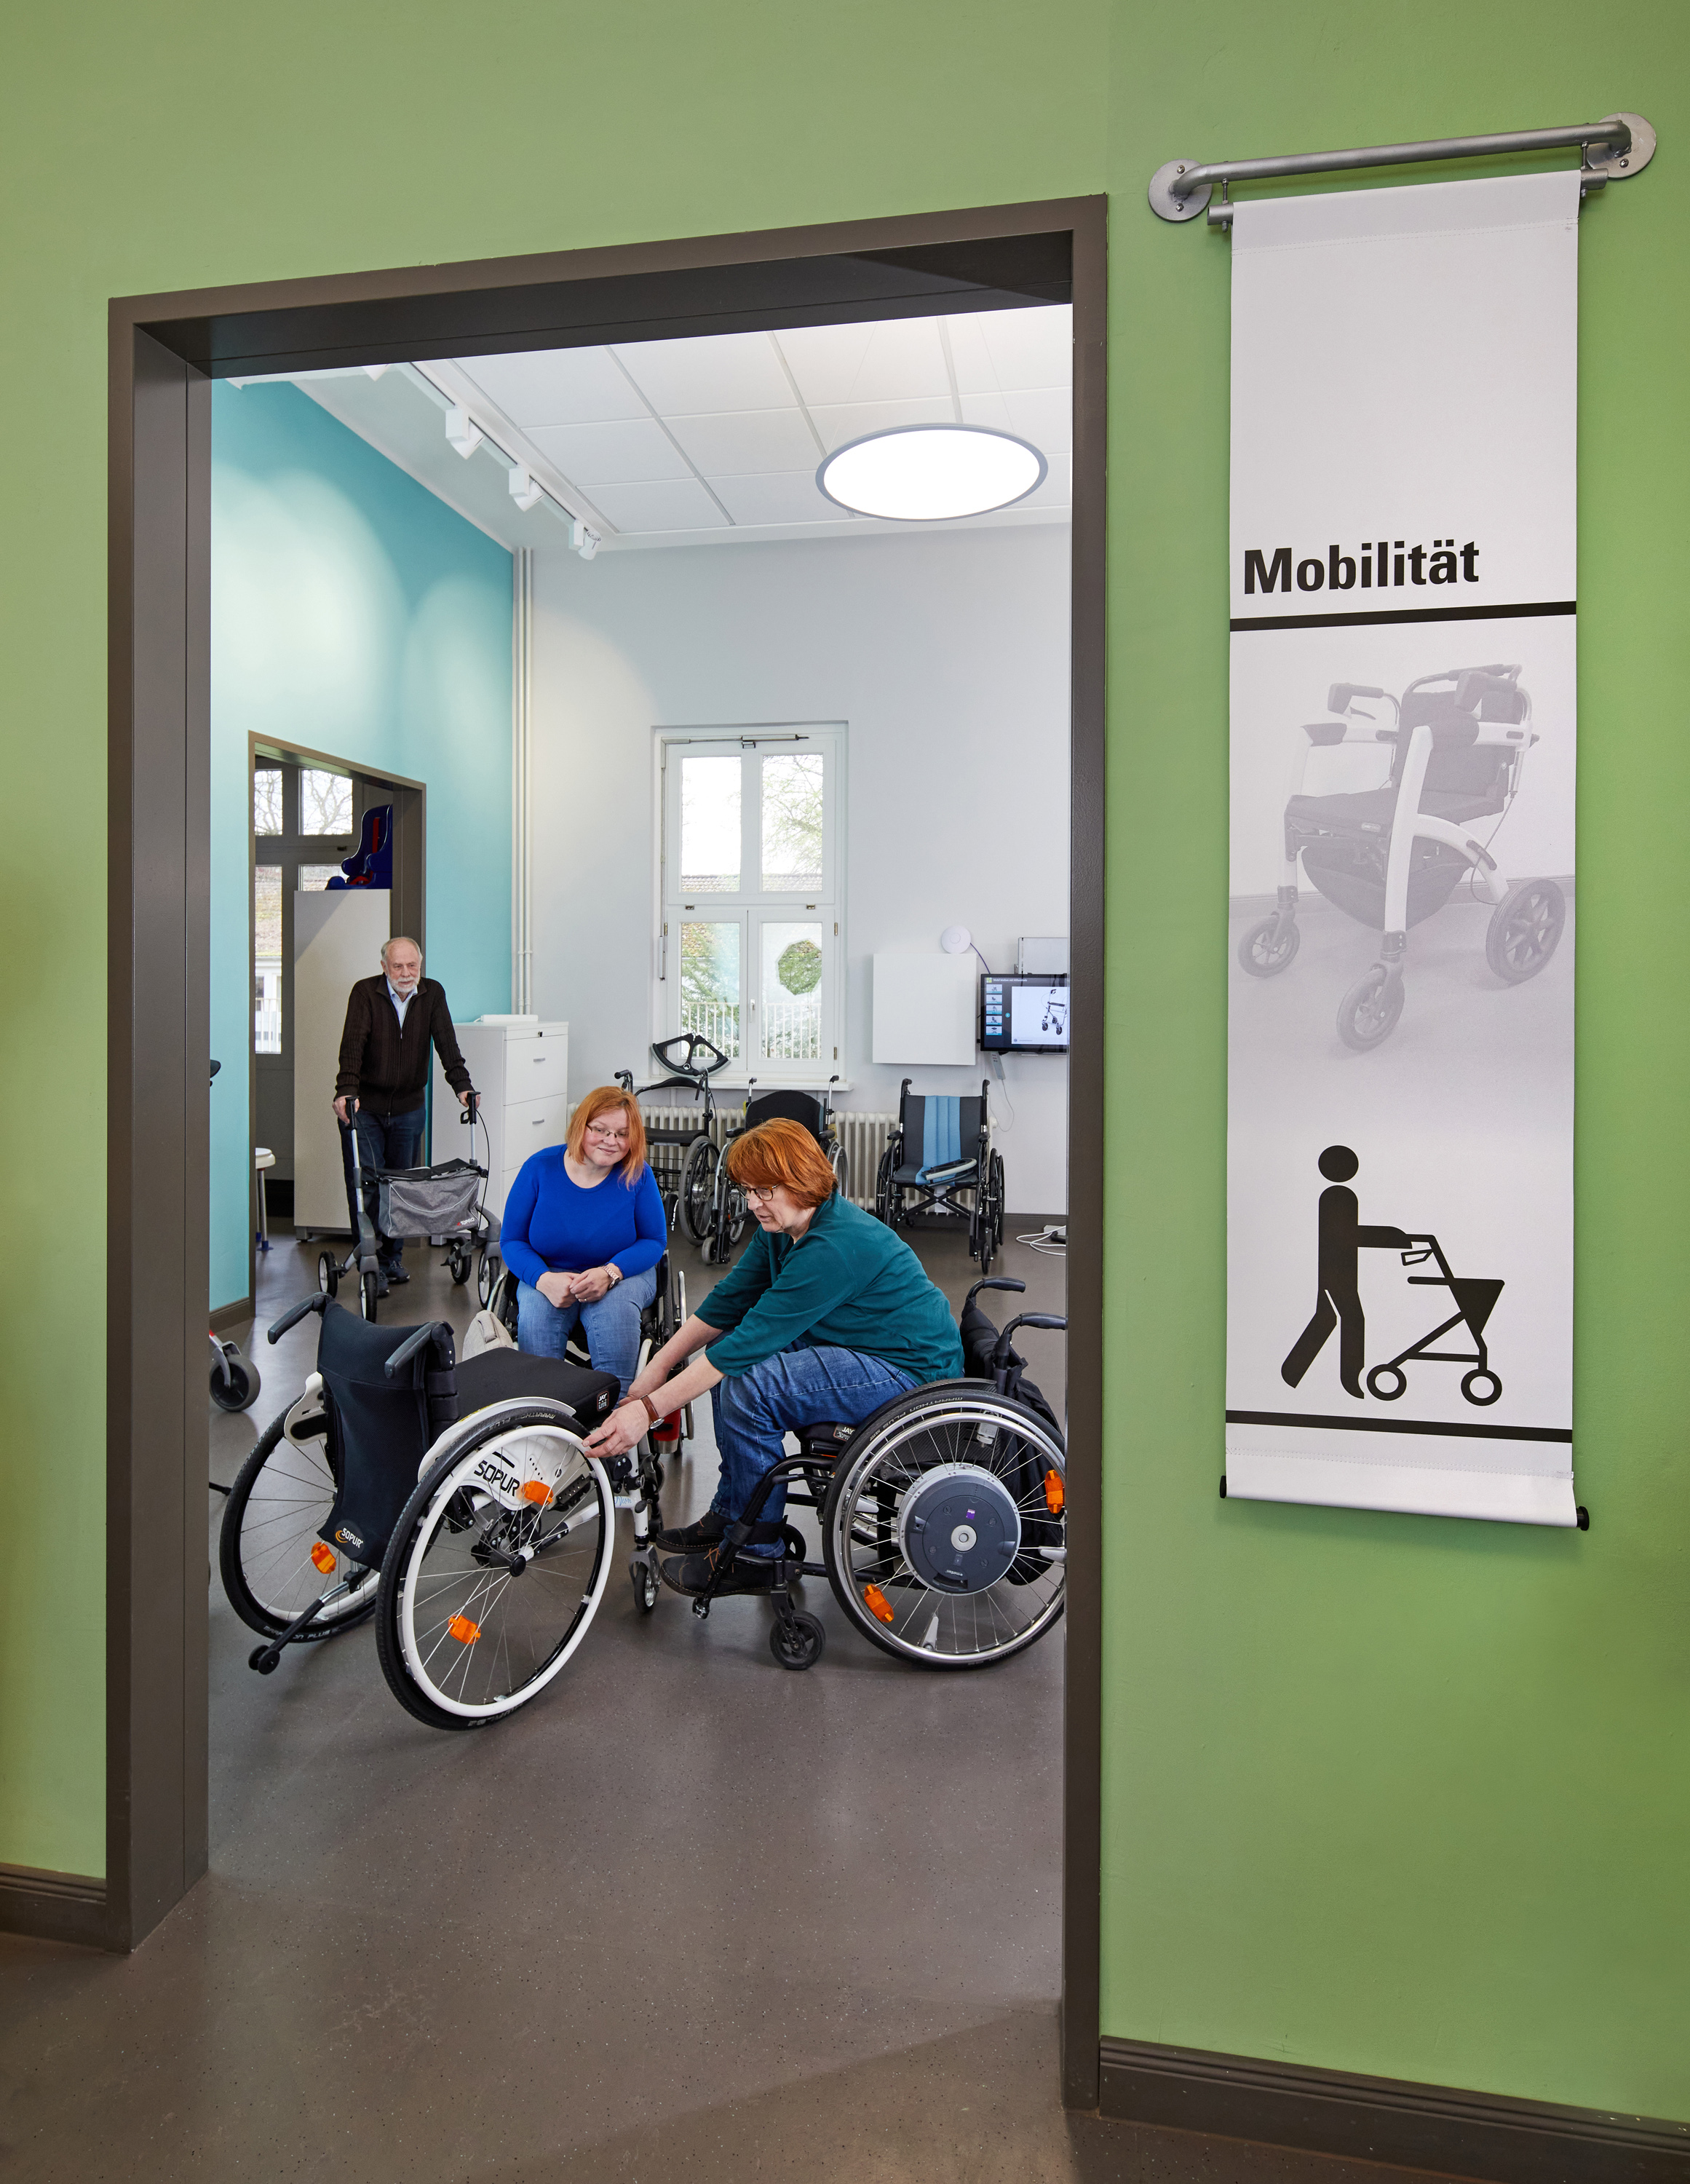 Zu sehen ist der Ausstellungsraum Mobilität. Zwei Frauen beschäftigten sich mit einem Rollstuhl und ein Mann kommt mit einem Rollator dazu.